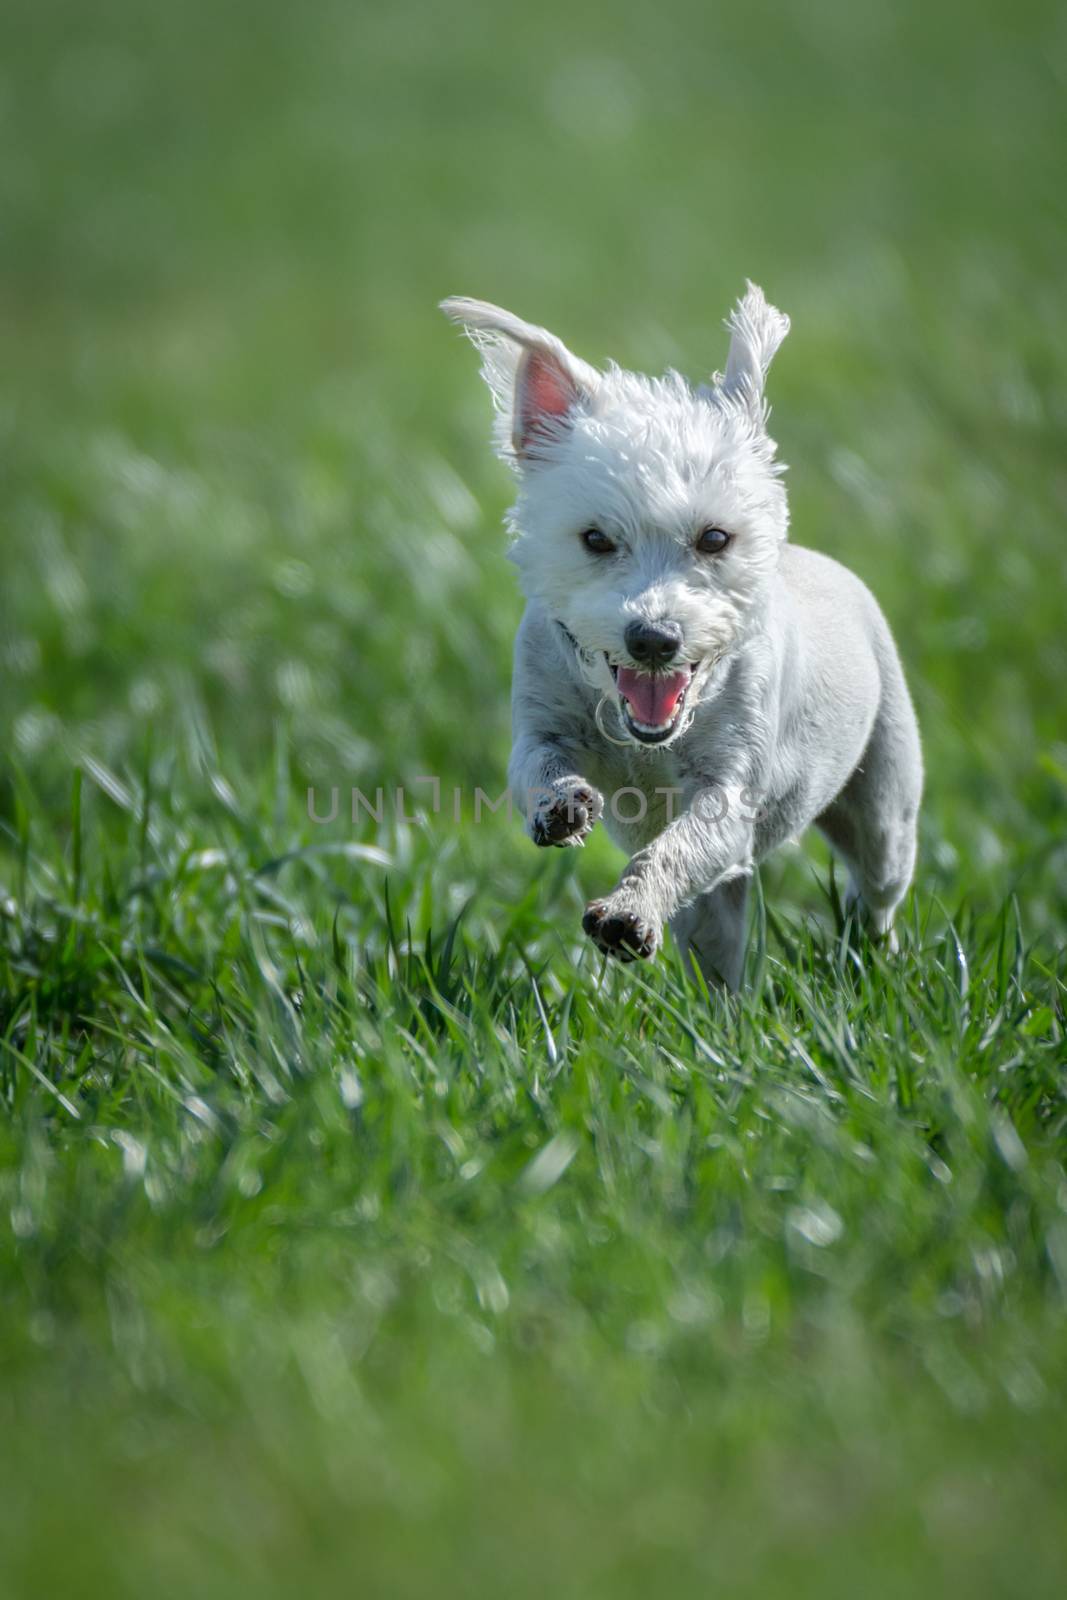 Puppy running through green grass by rockinelle